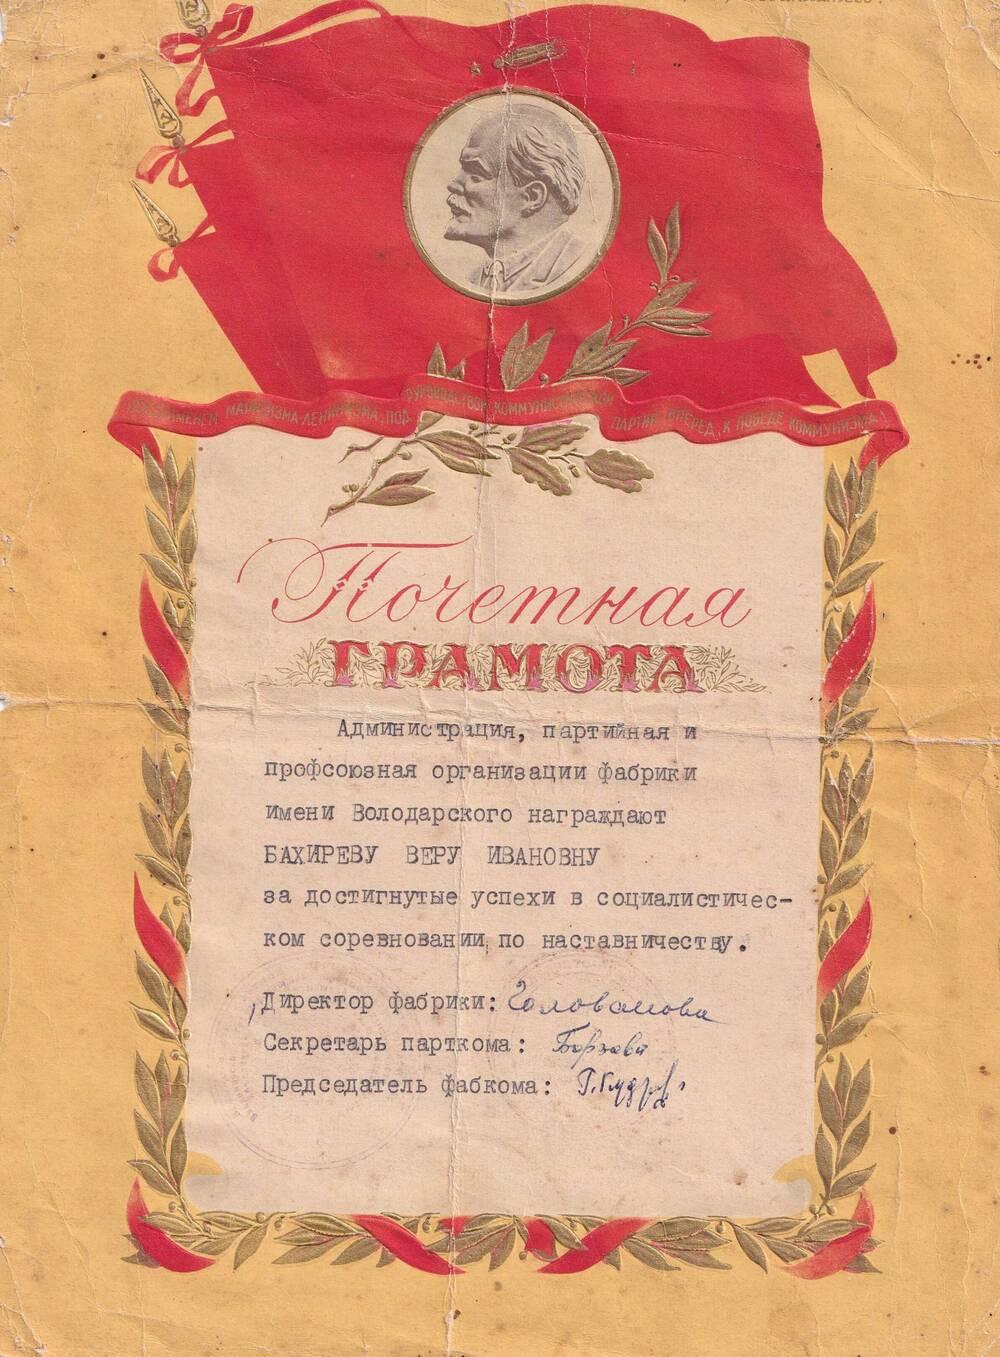 Почётная грамота Бахиревой Веры Ивановны за достигнутые успехи в социалистическом соревновании. 1950-60 гг.